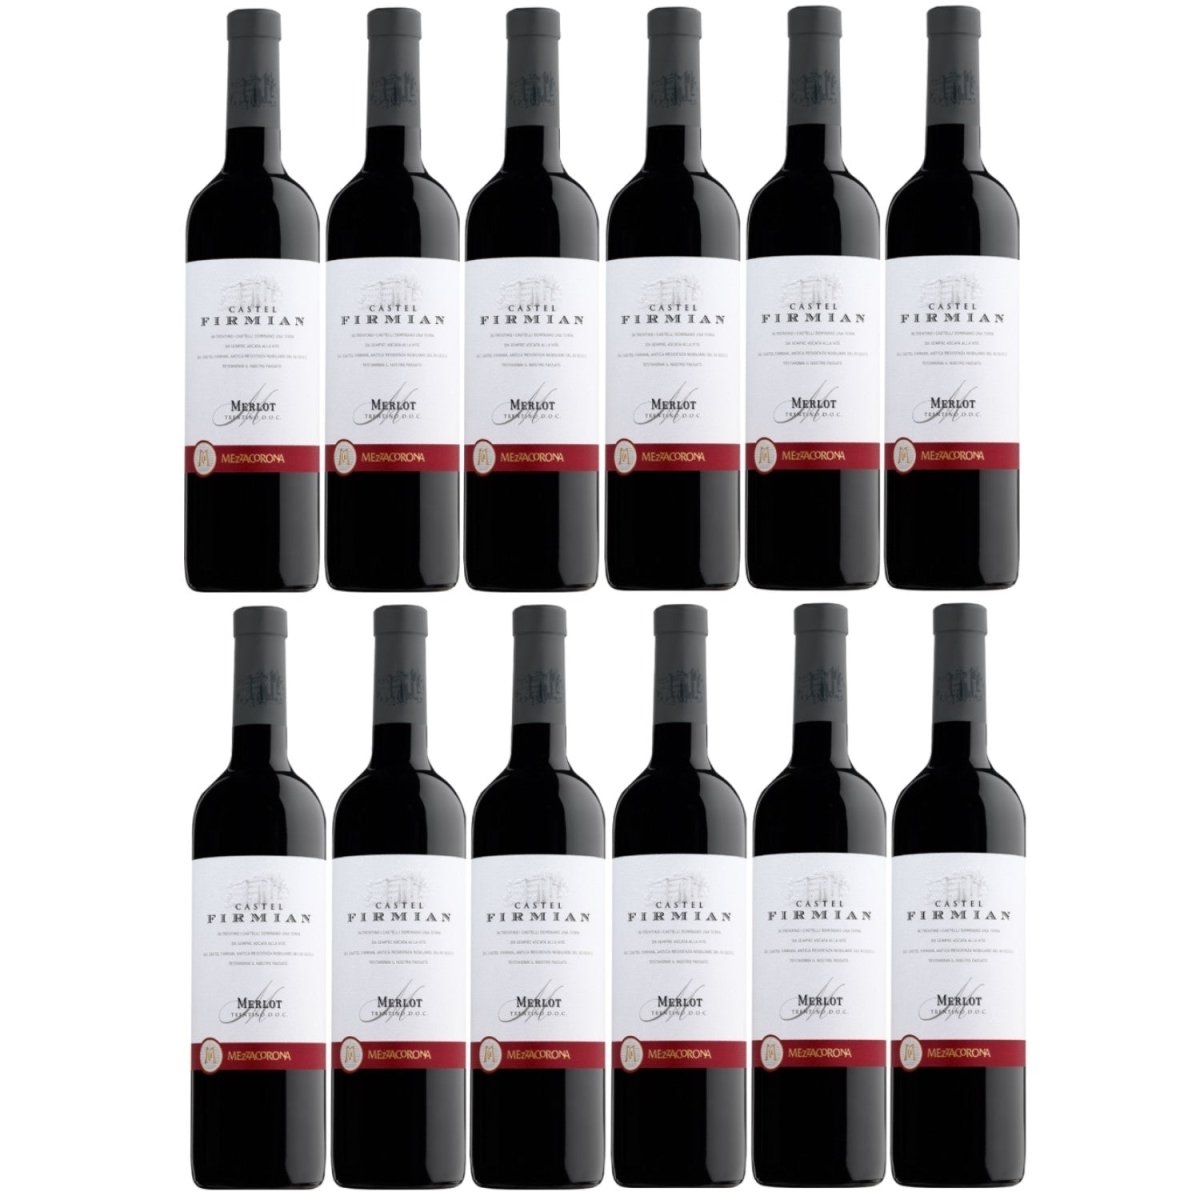 Castel Firmian Merlot Trentino DOC Rotwein Wein trocken Italien I Visando Paket (12 Flaschen) - Versanel -